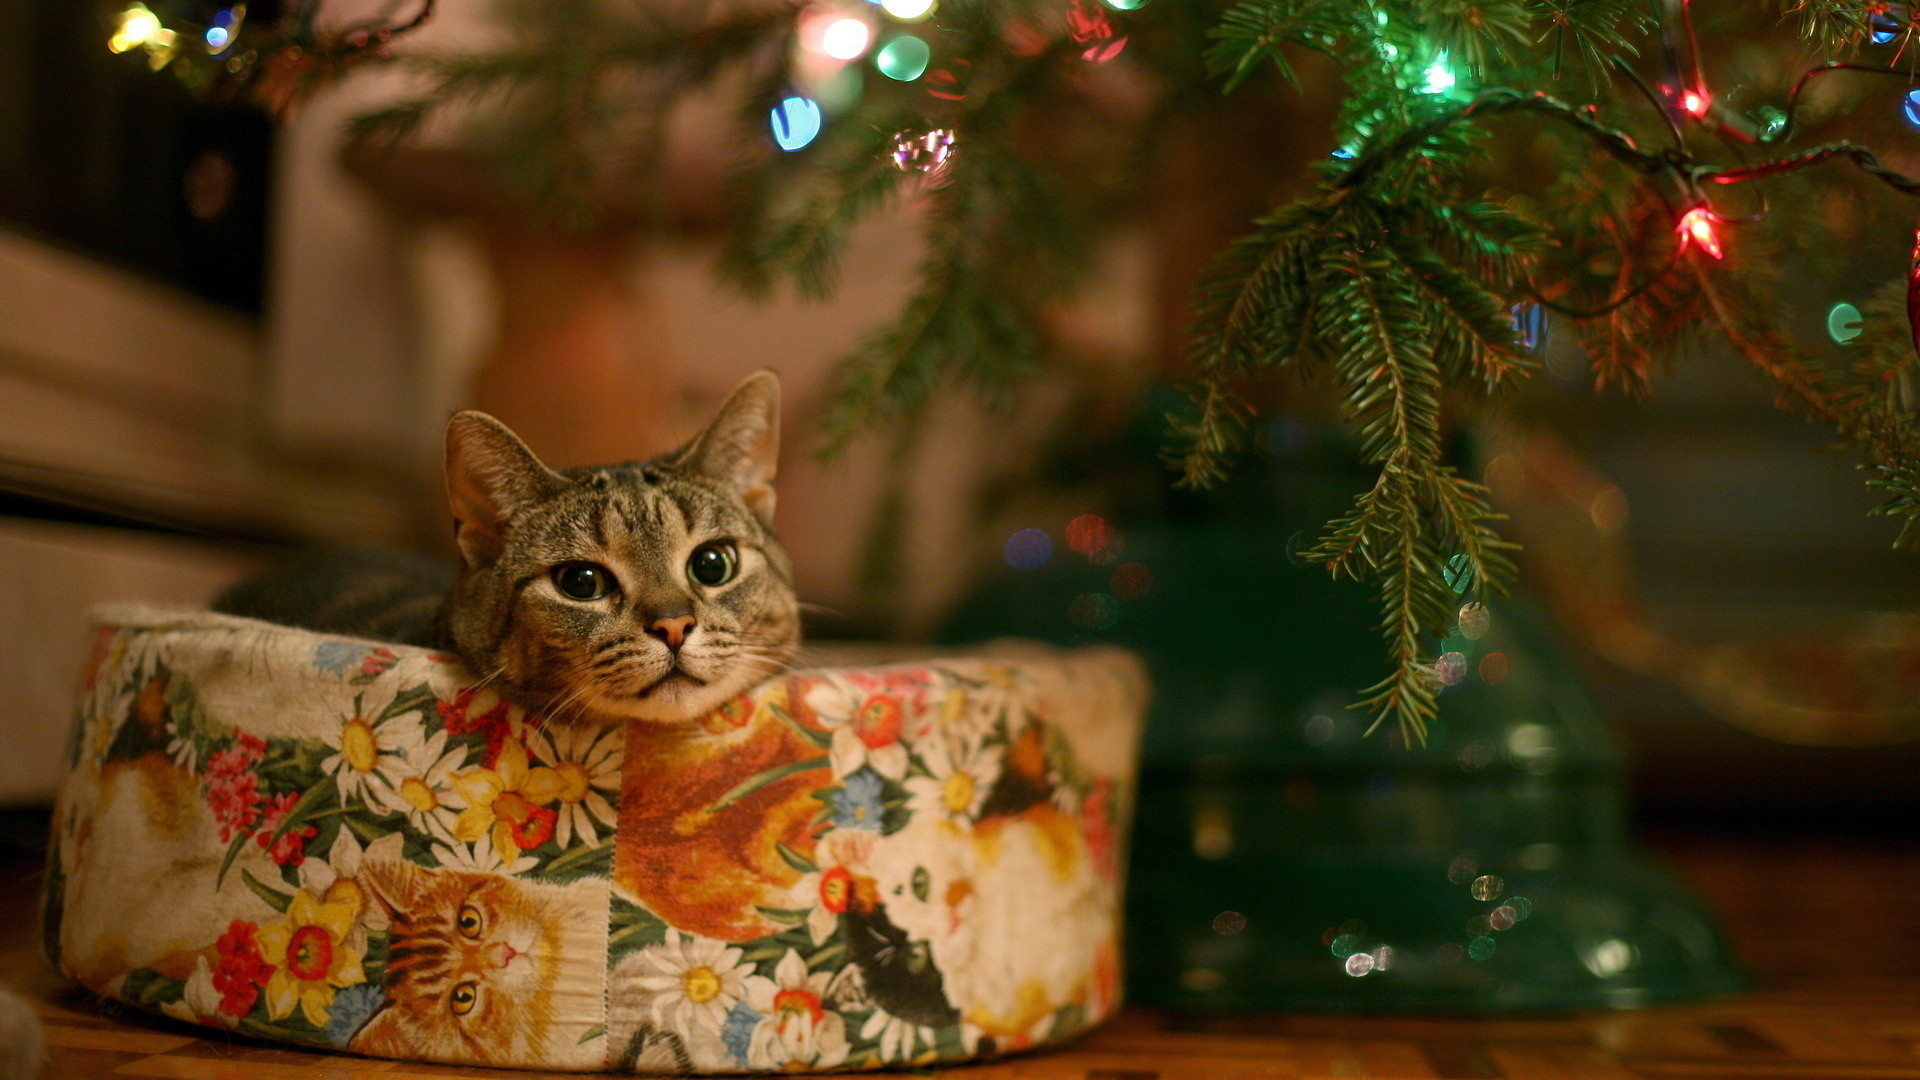 Cute christmas cat, Full HD, 1080p, wallpaper, 19201080